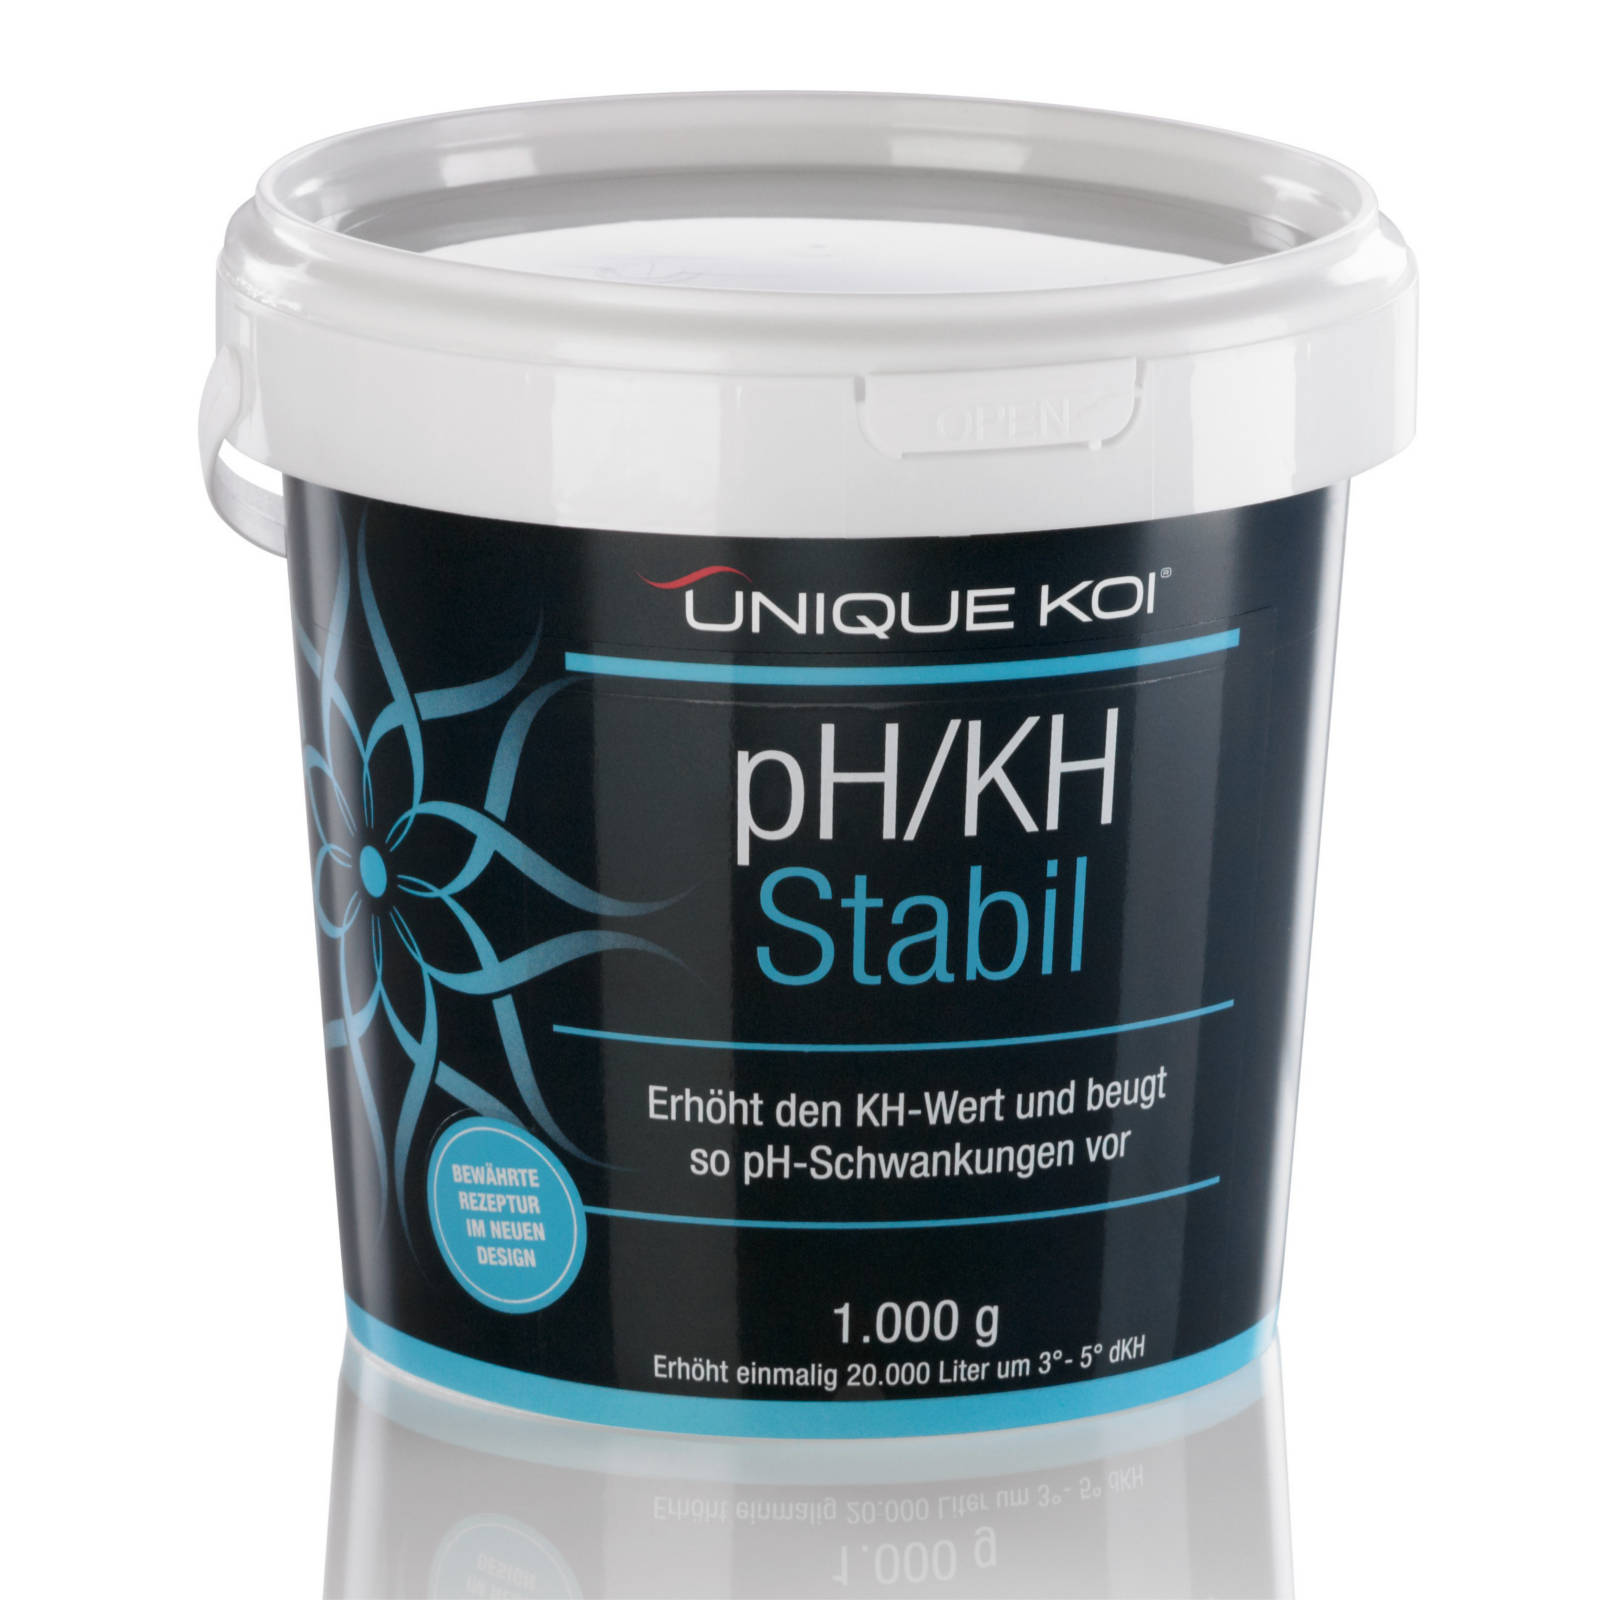 Unique Koi pH/KH Stabil Erhöht den KH-Wert und beugt so pH-Schwankungen vor 1000g für 20000l